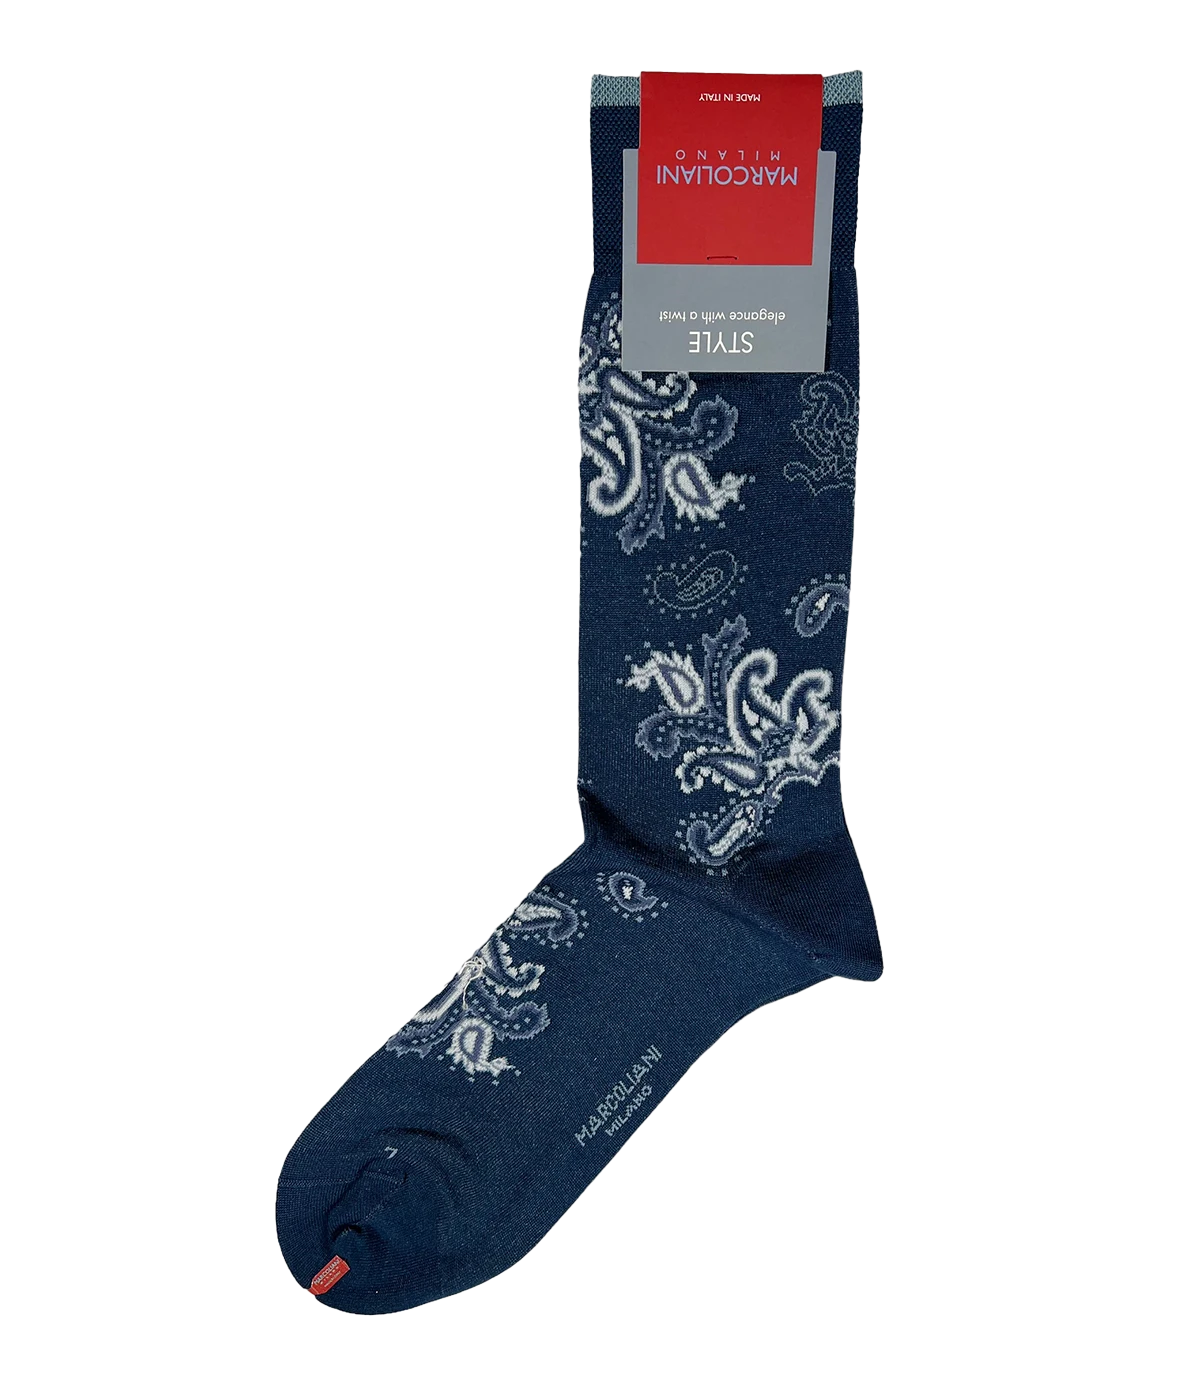 Paisley Socks in Dark Blue Denim